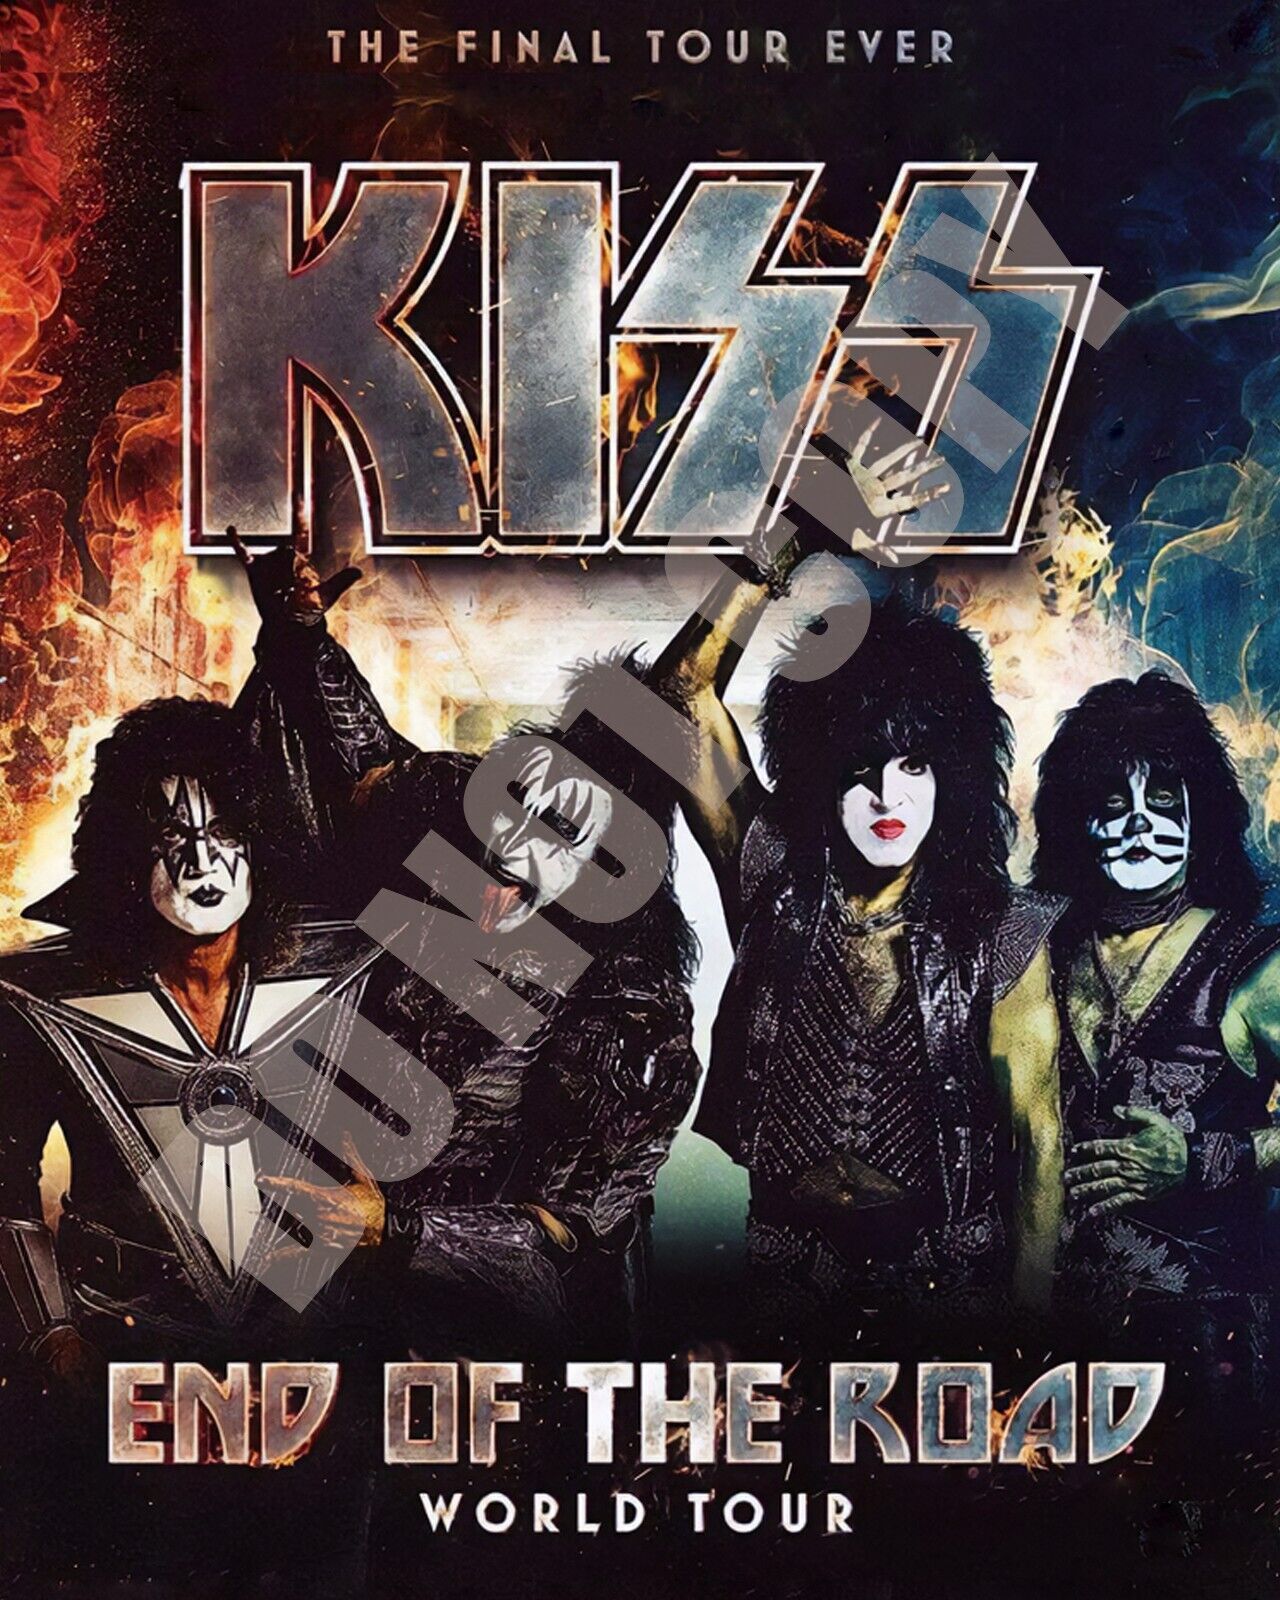 KISS 2023 Final Tour Concert Ticket Announcement Magazine Ad 8x10 Photo